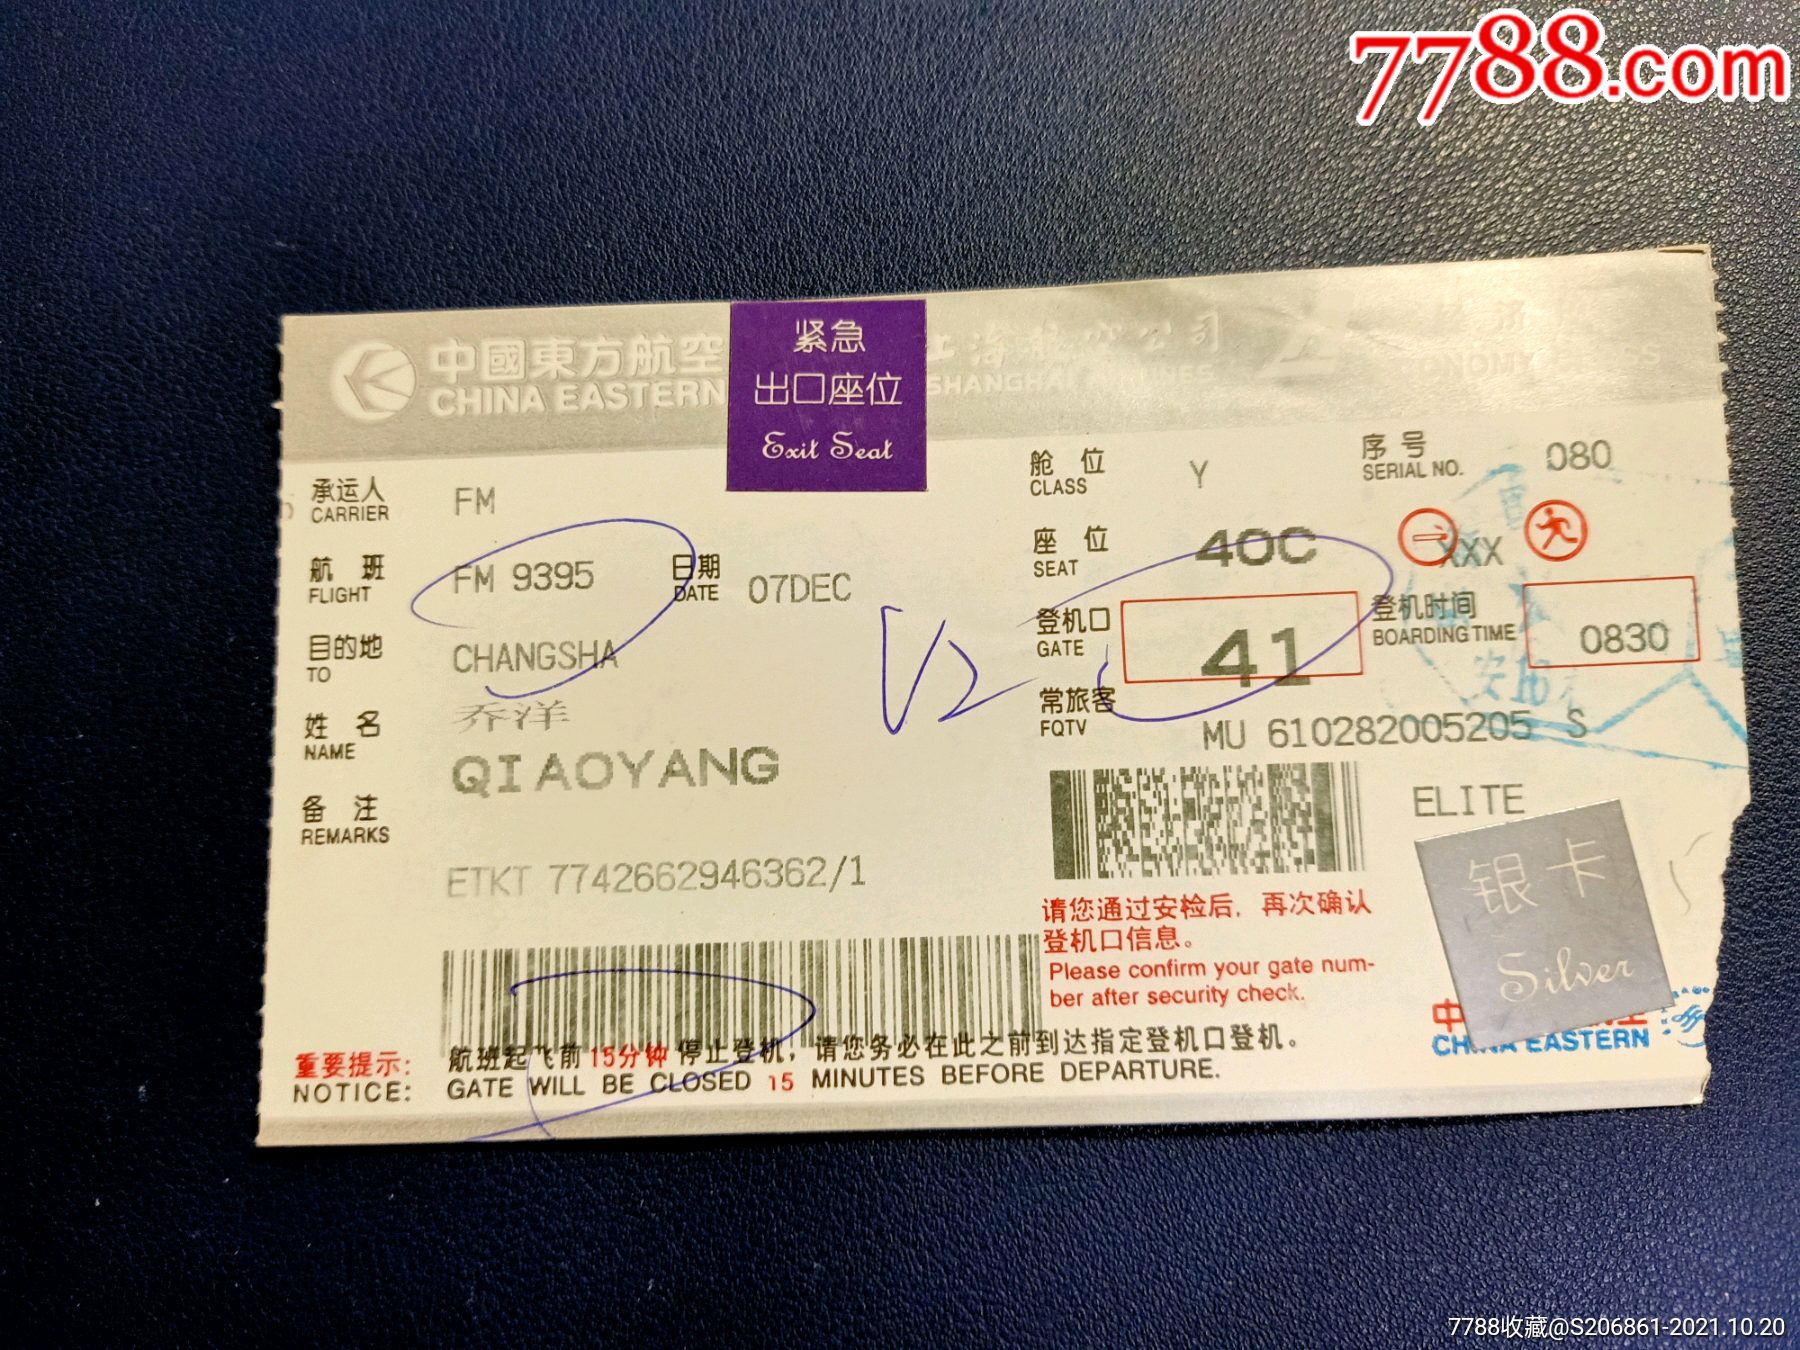 中国东方航空上海航空公司登机牌-飞机/航空票-7788收藏